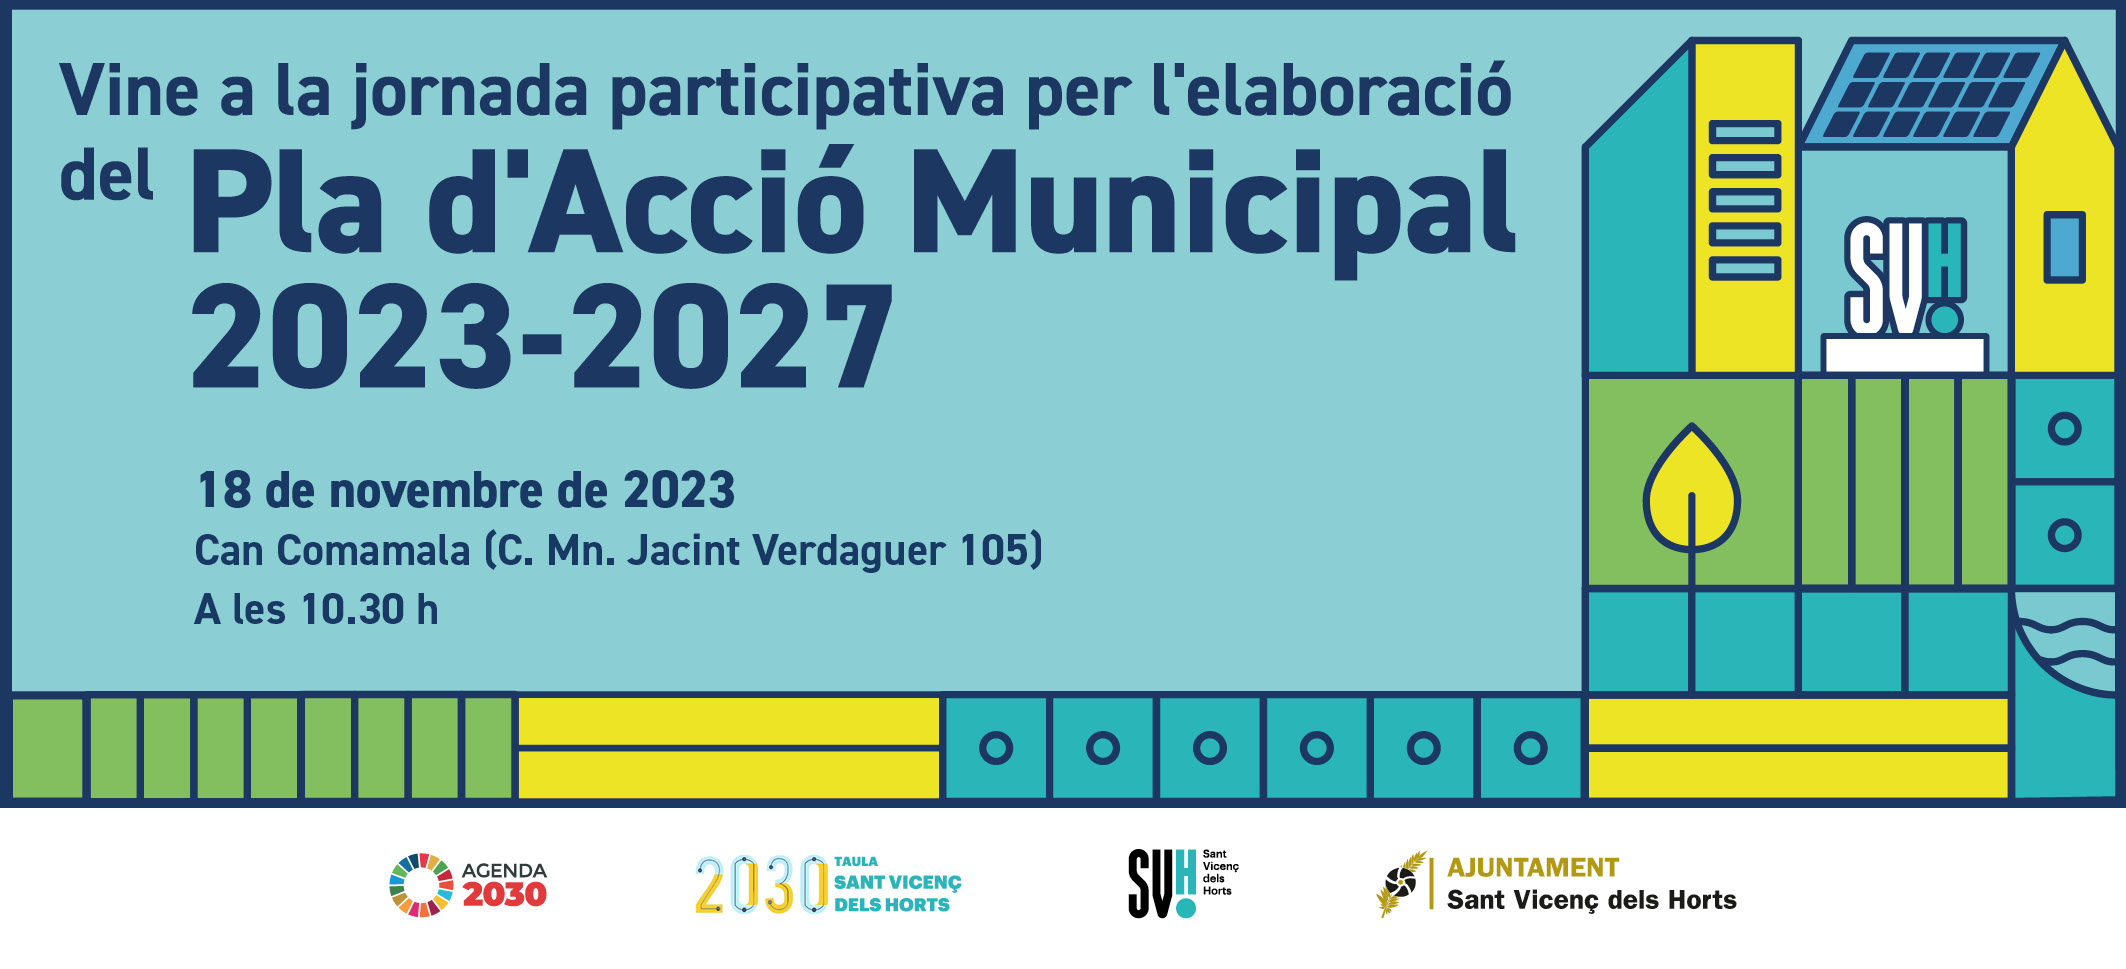 Vine a la jornada participativa per a l'elaboració del Pla d'Acció Municipal (PAM) 2023-2027